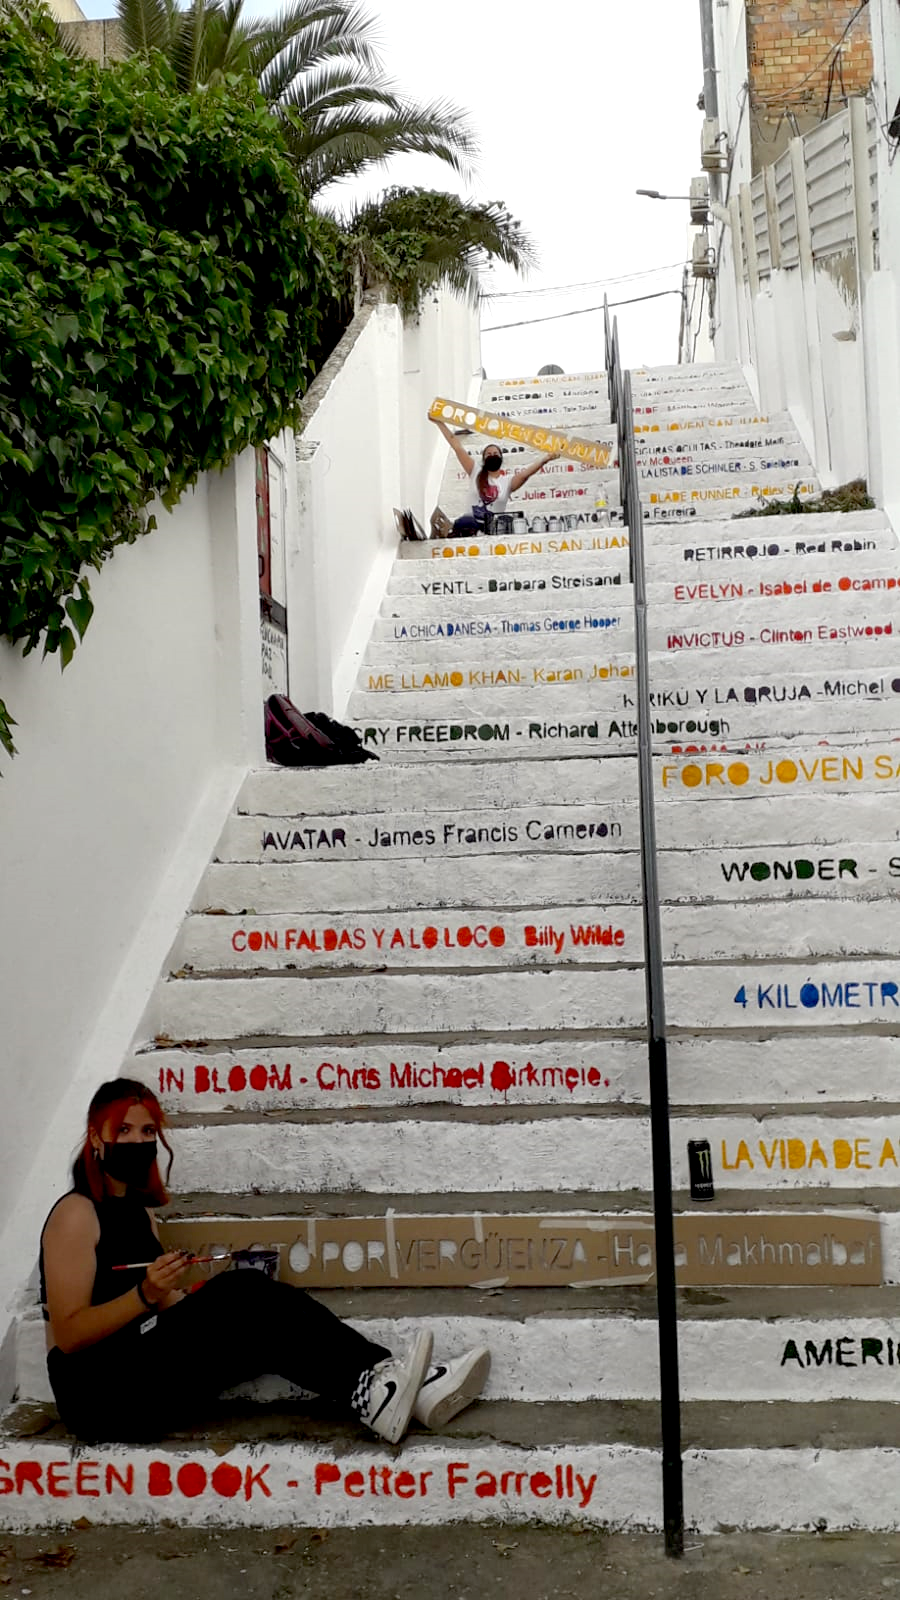 Pintado escaleras videoteca Culturas (7)